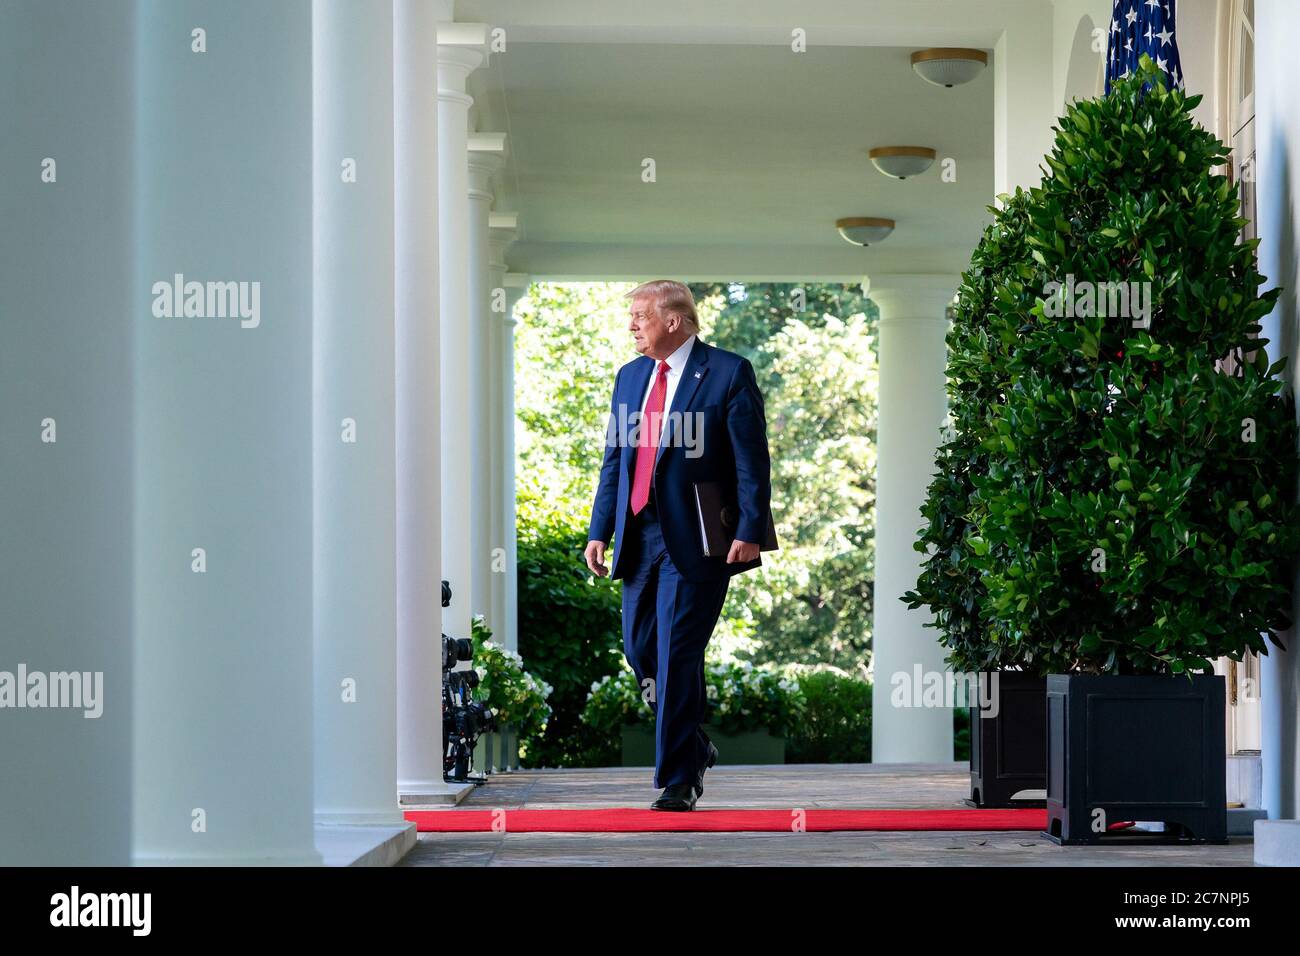 Washington, Vereinigte Staaten Von Amerika. Juli 2020. Präsident Donald J. Trump verlässt das Oval Office des Weißen Hauses und geht am Dienstag, den 14. Juli 2020, auf dem Weg zu einer Pressekonferenz im Rosengarten entlang der Kolonnade. Personen: Präsident Donald Trump Kredit: Storms Media Group/Alamy Live News Stockfoto